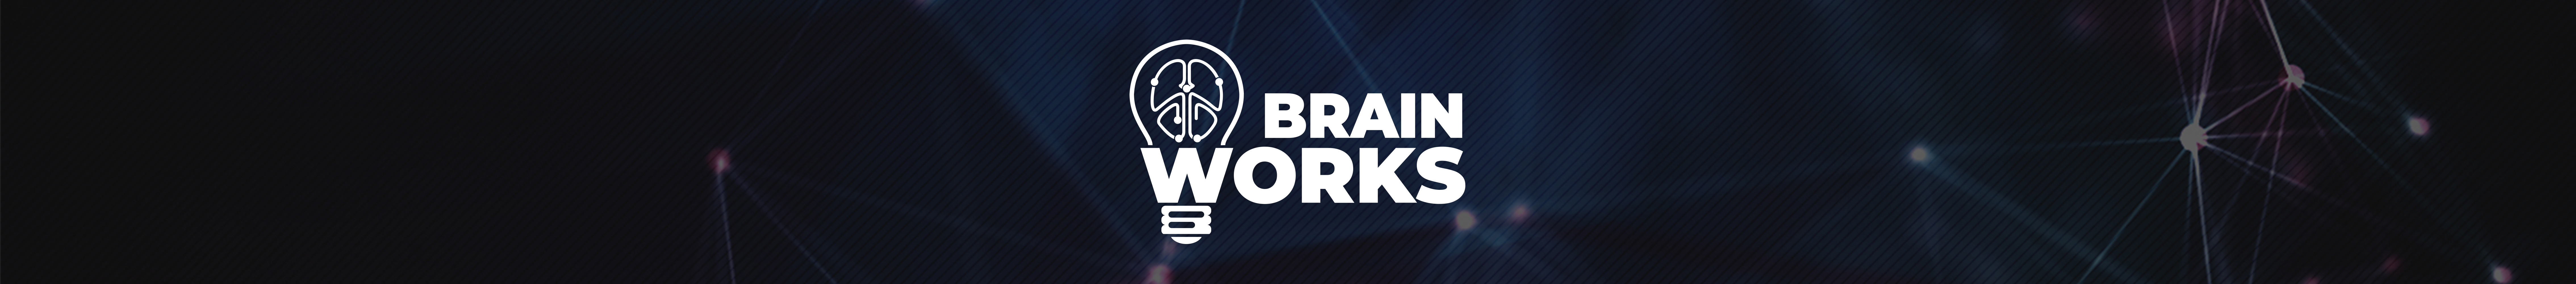 Brain Workss profilbanner